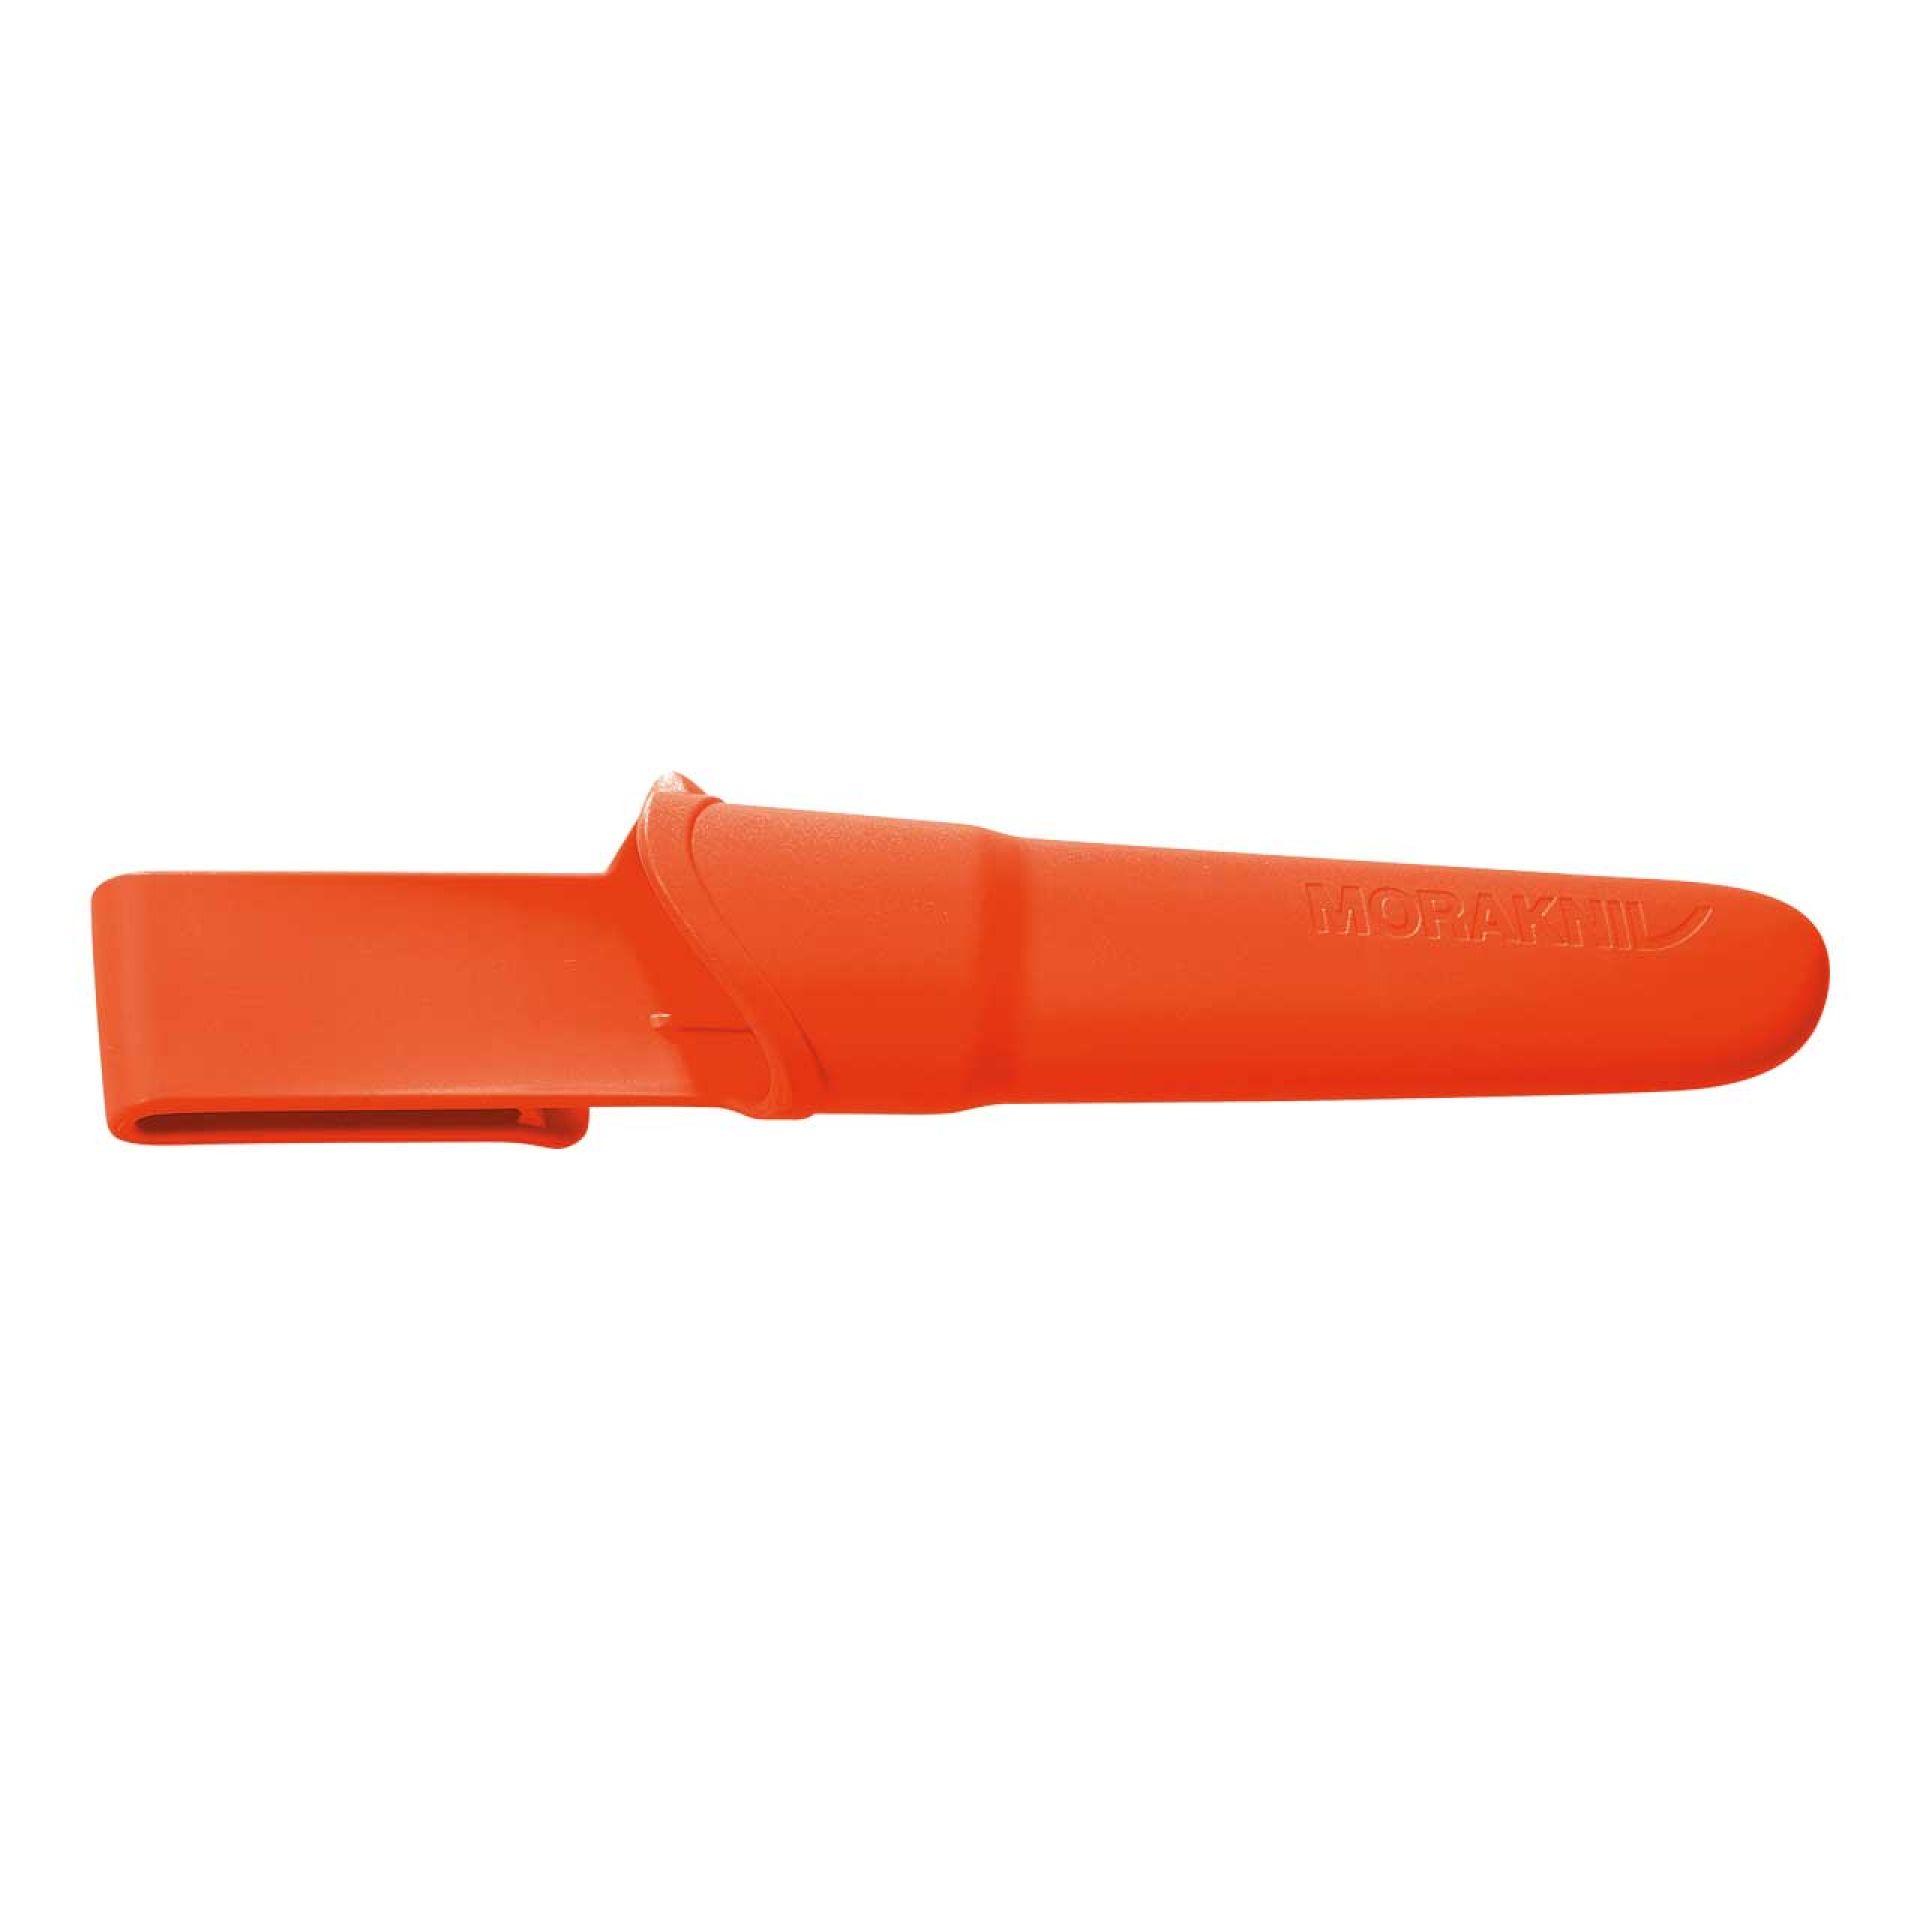 Mora Outdoormesser Companion  mit robuster Kunststoffscheide in Orange